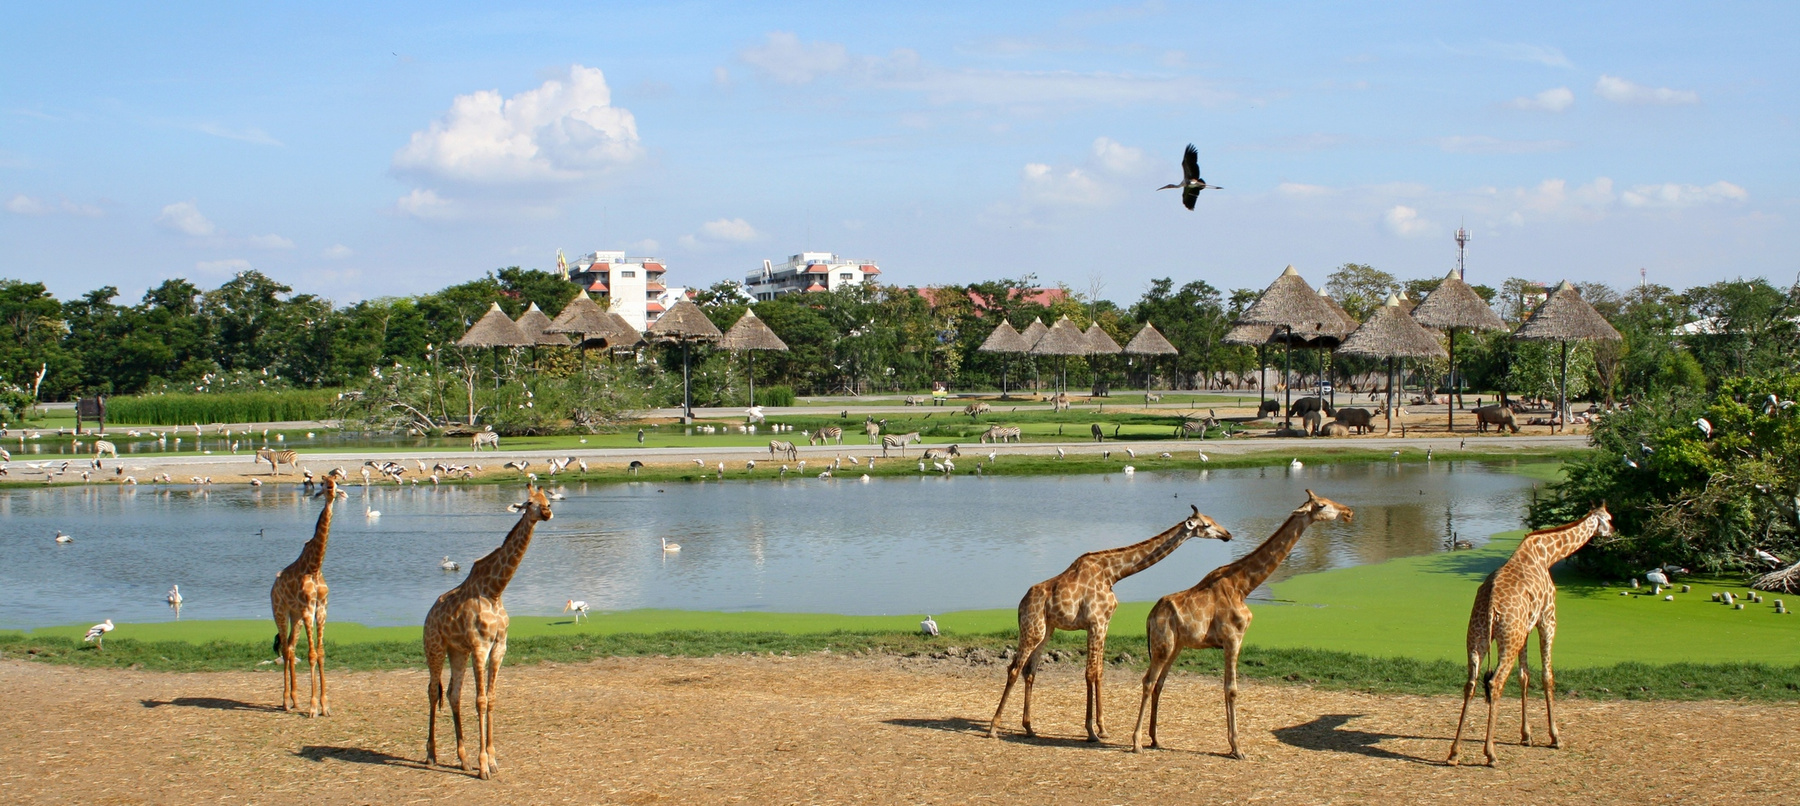 В Сафари парке сафари парк жирафы бангкок пруд